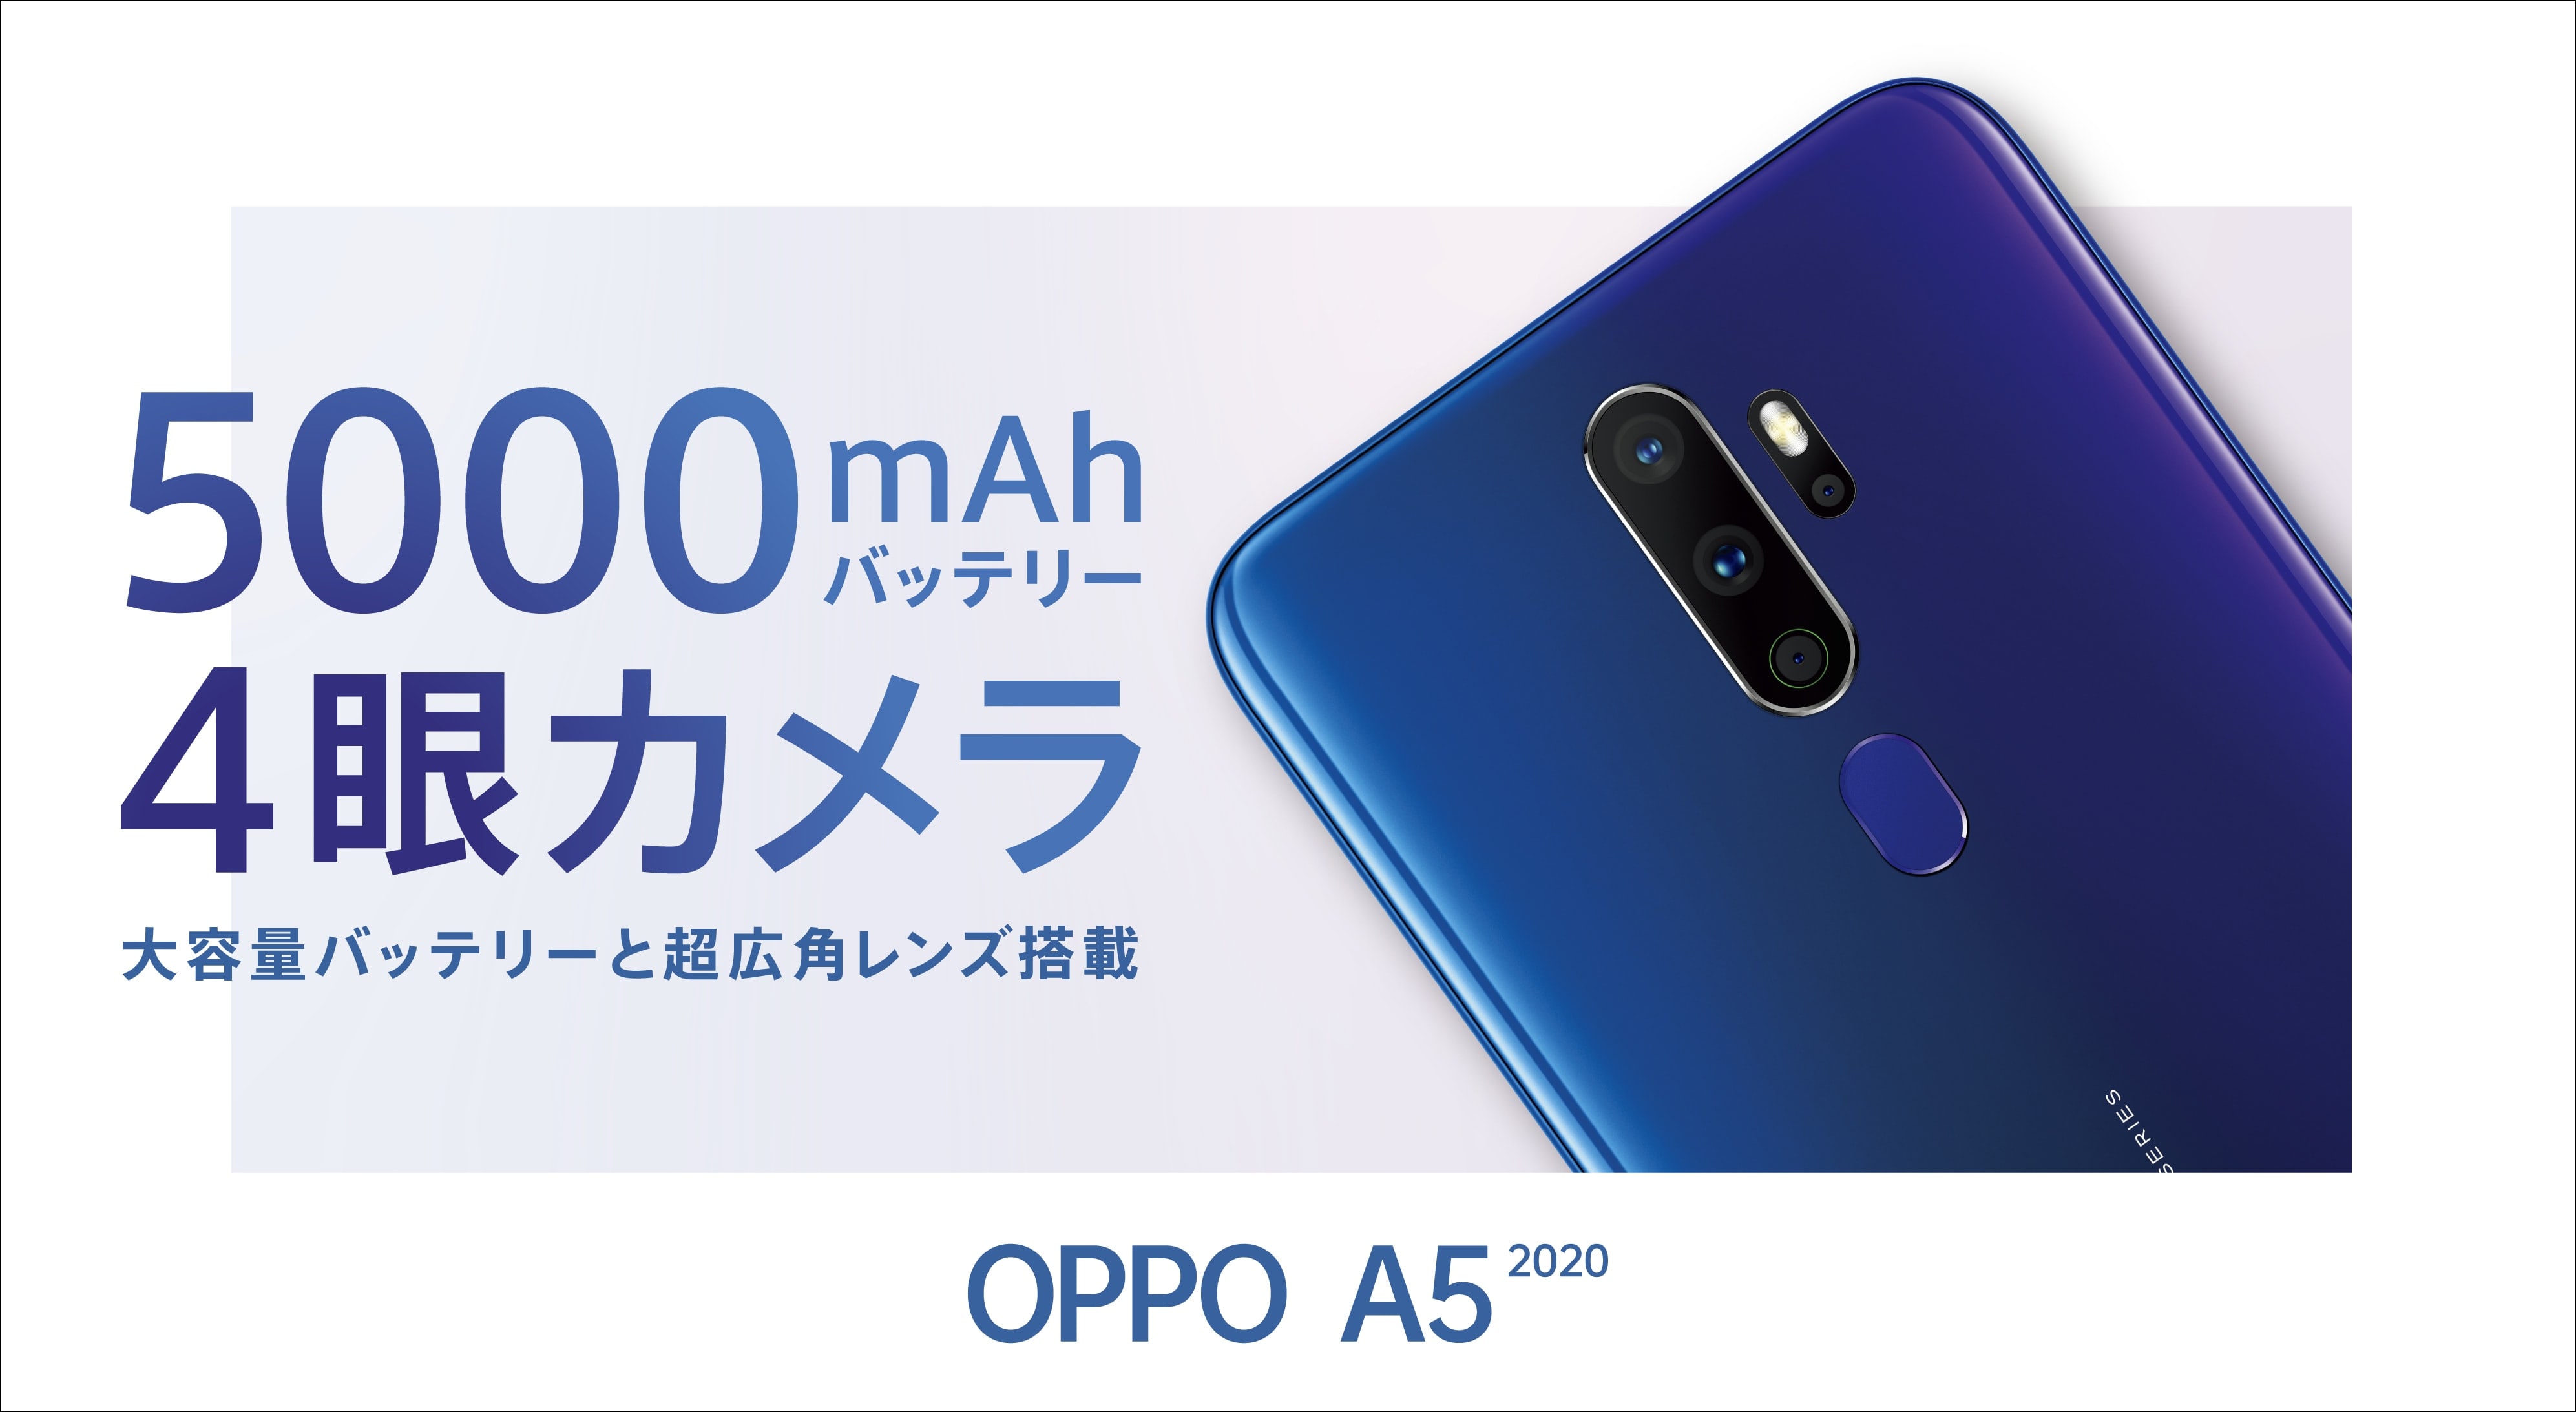 SIMフリースマートフォン「OPPO A5 2020」を発表 | オッポ